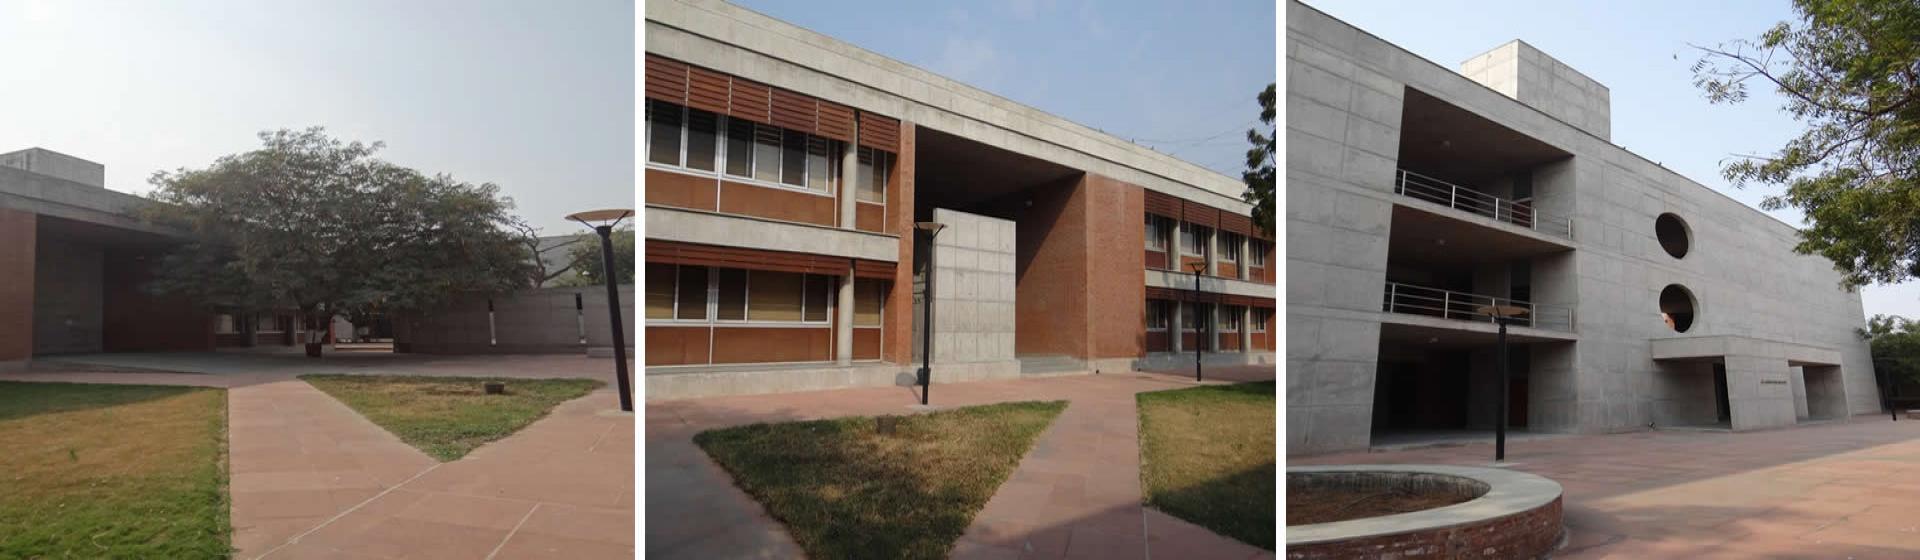 નોલેજ કોન્સોર્ટિયમ ઓફ ગુજરાત - કેમ્પસ ફોટો -2